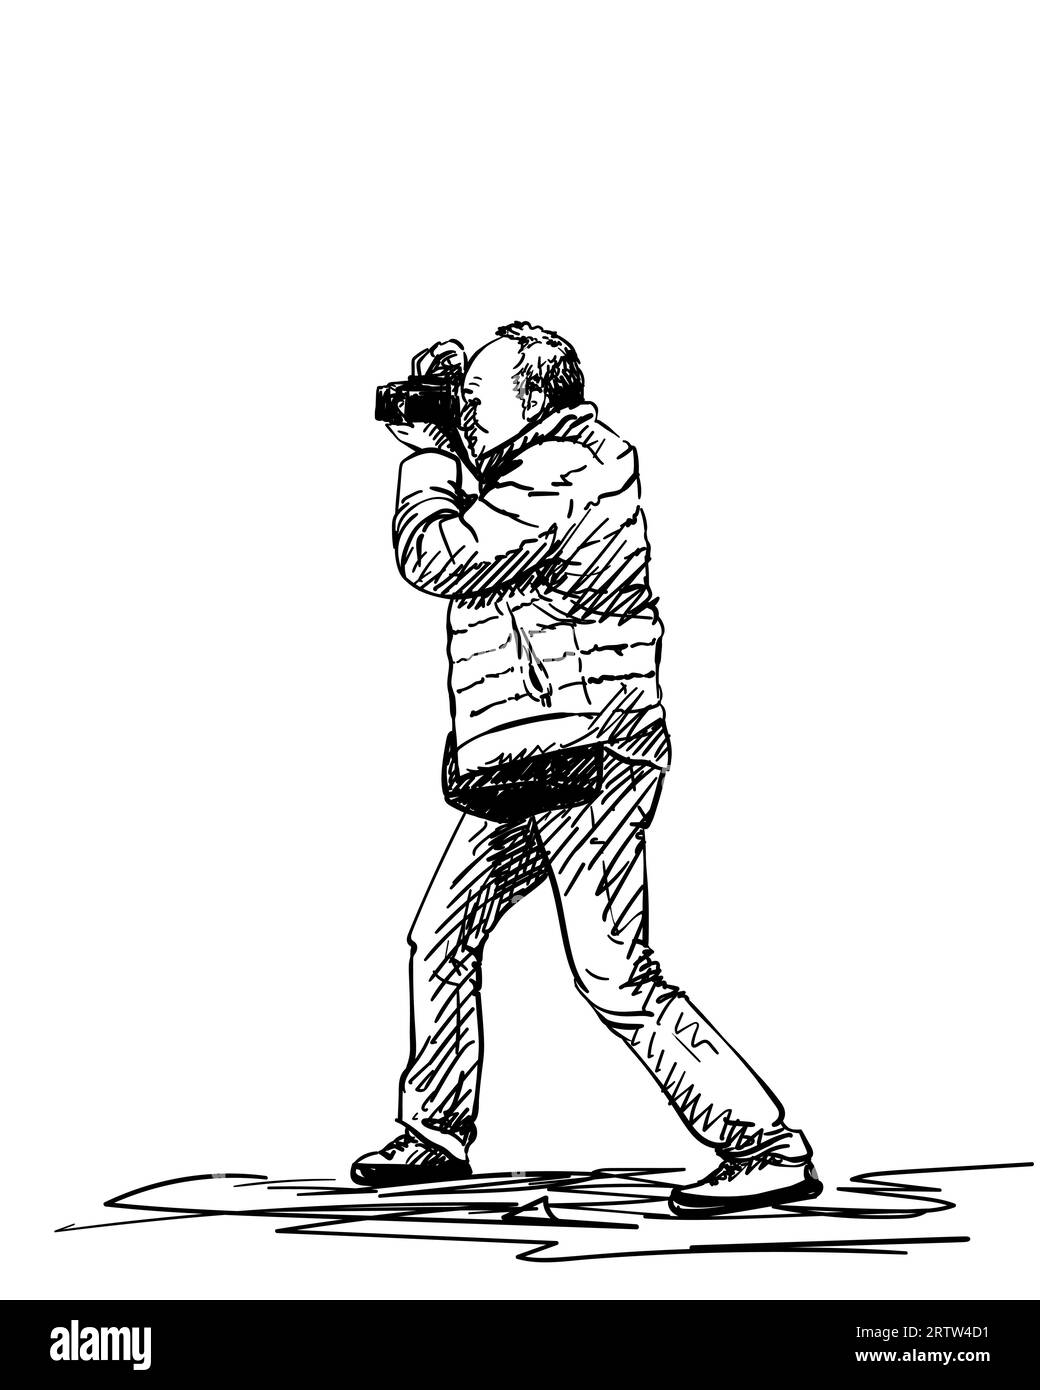 Zeichnung des Mannes mit Fotokamera, Fotograf, der Foto macht, zweifarbige Skizze auf dunklem Hintergrund, handgezeichnete Vektorillustration Stock Vektor